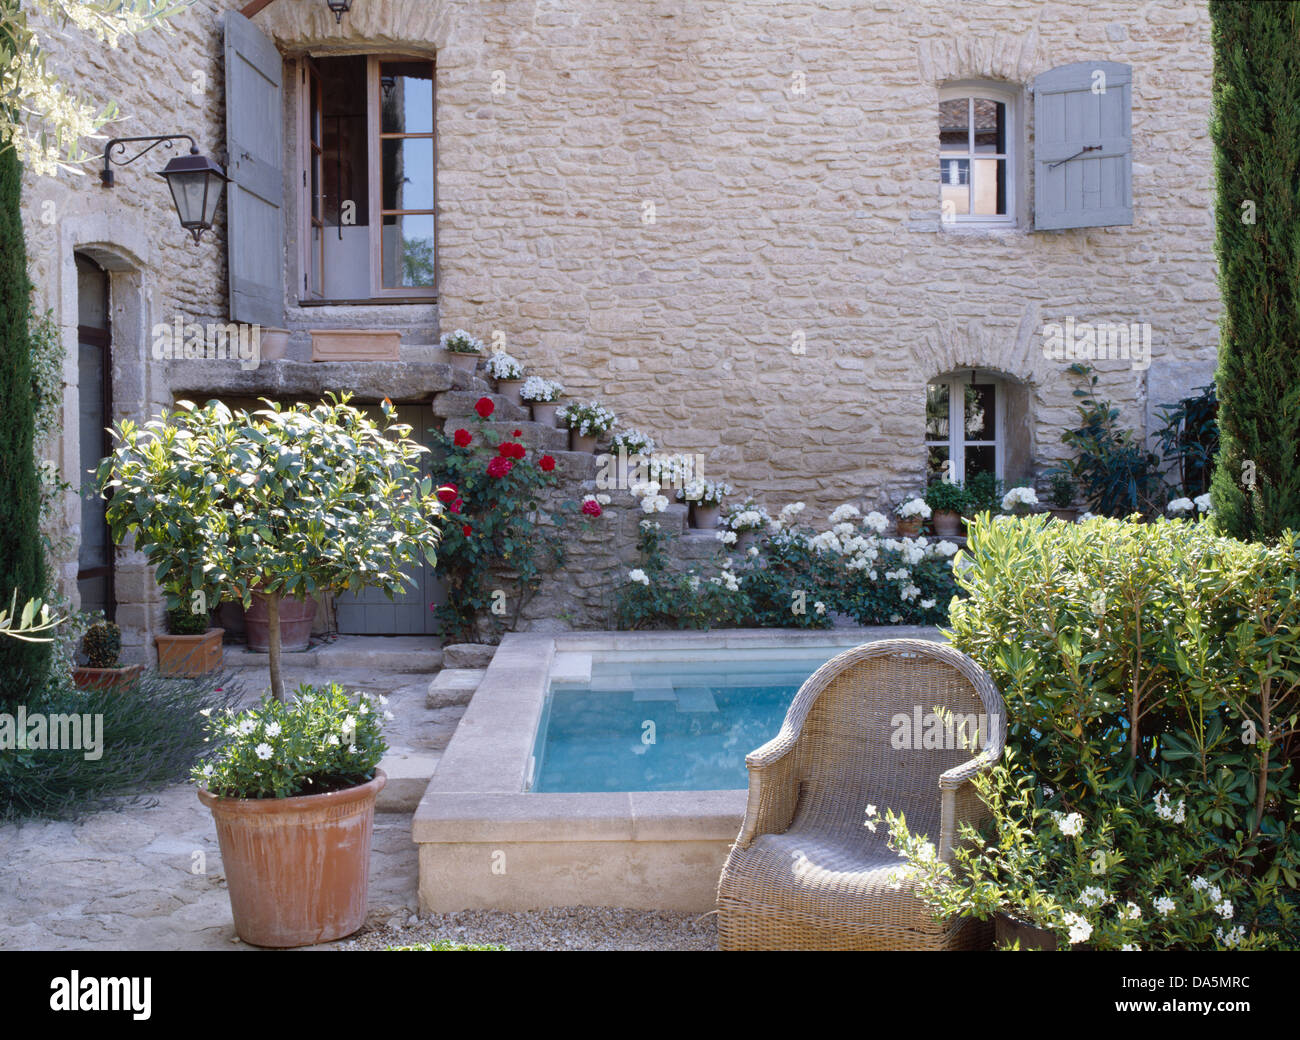 Petite piscine dans la cour intérieure de l'anglais country house avec bay tree en terre cuite pot à côté d'un fauteuil en osier Banque D'Images